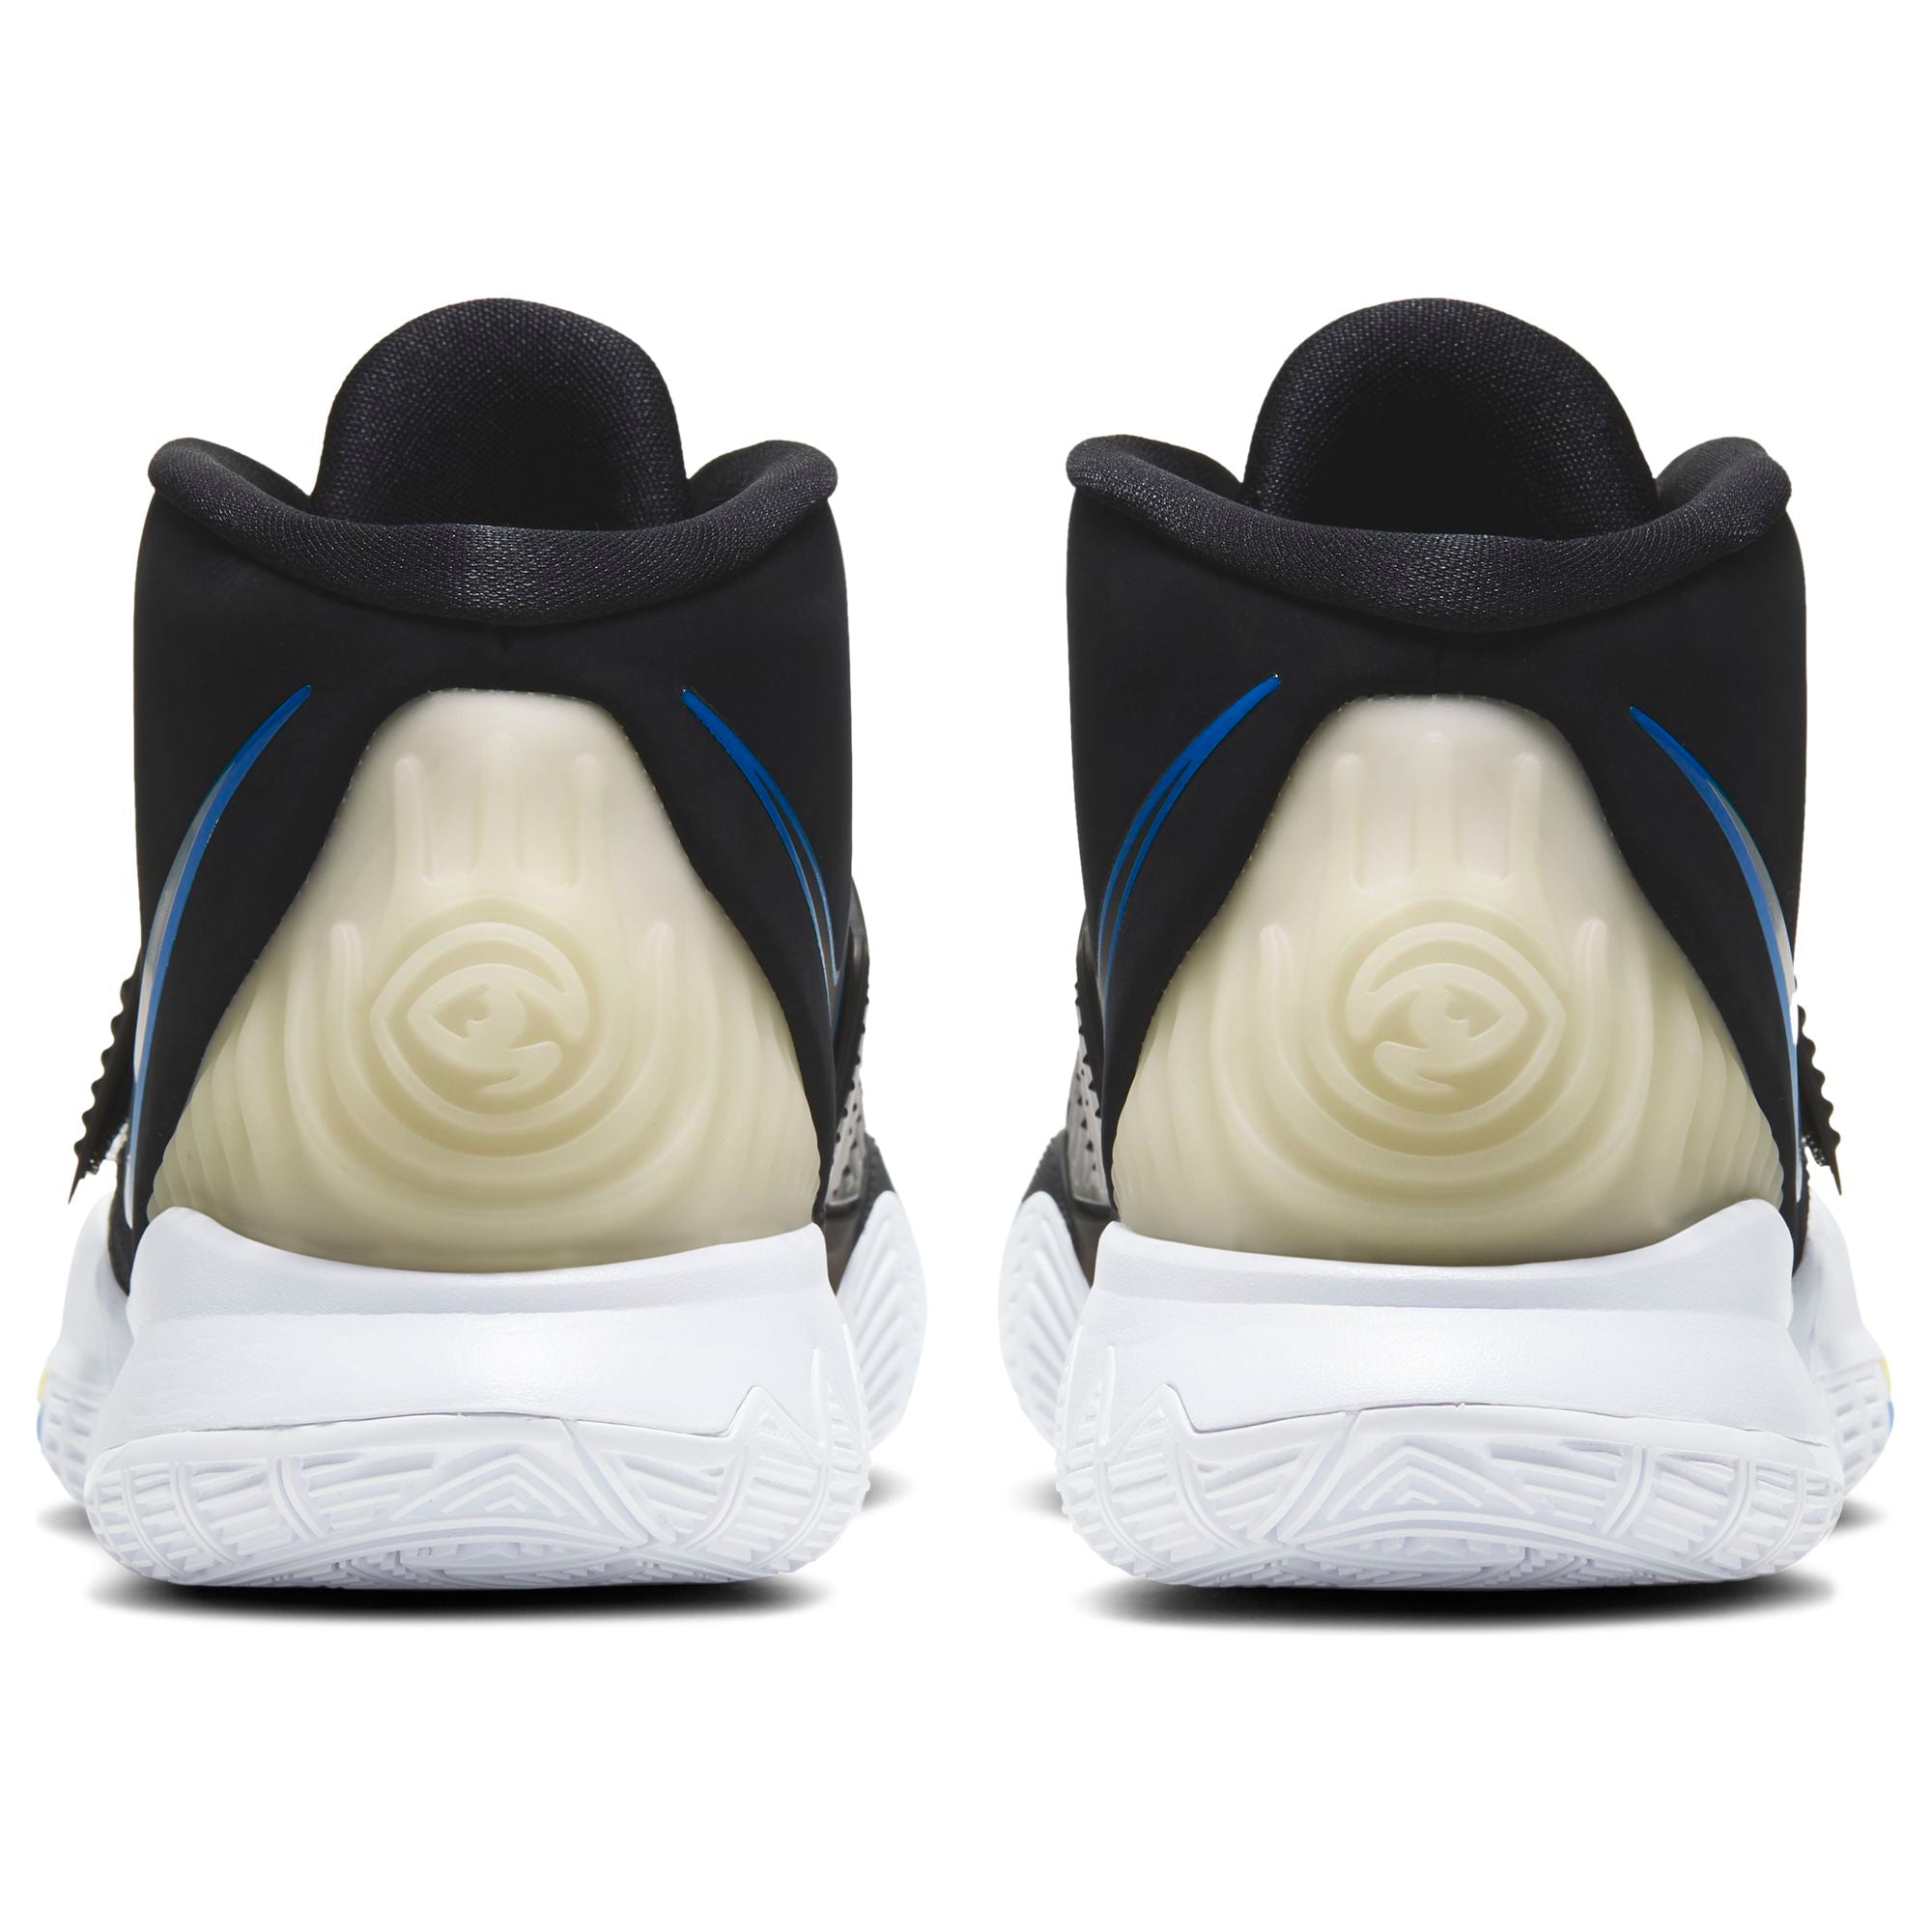 Nike Kyrie 6 Basketball Boot/shoe - Black/White/Soar/Dynamic Yellow